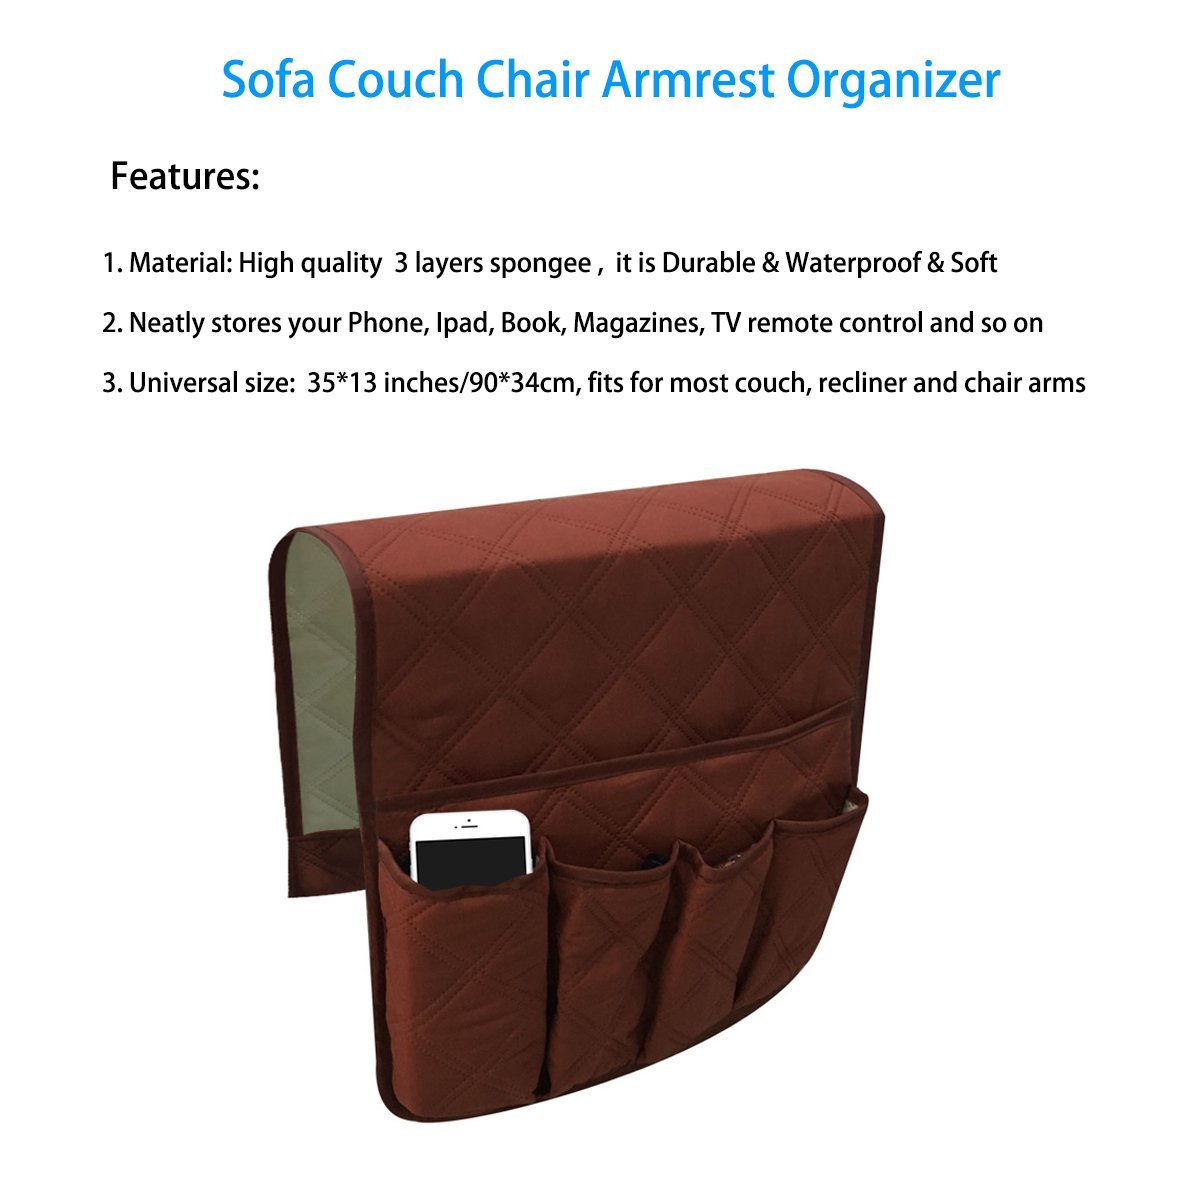 Waterproof-Sofa-Armrest-Storage-Organizer-for-Tablets-TV-Remotes-Phones-4-colors-Storage-Bag-1288915-1